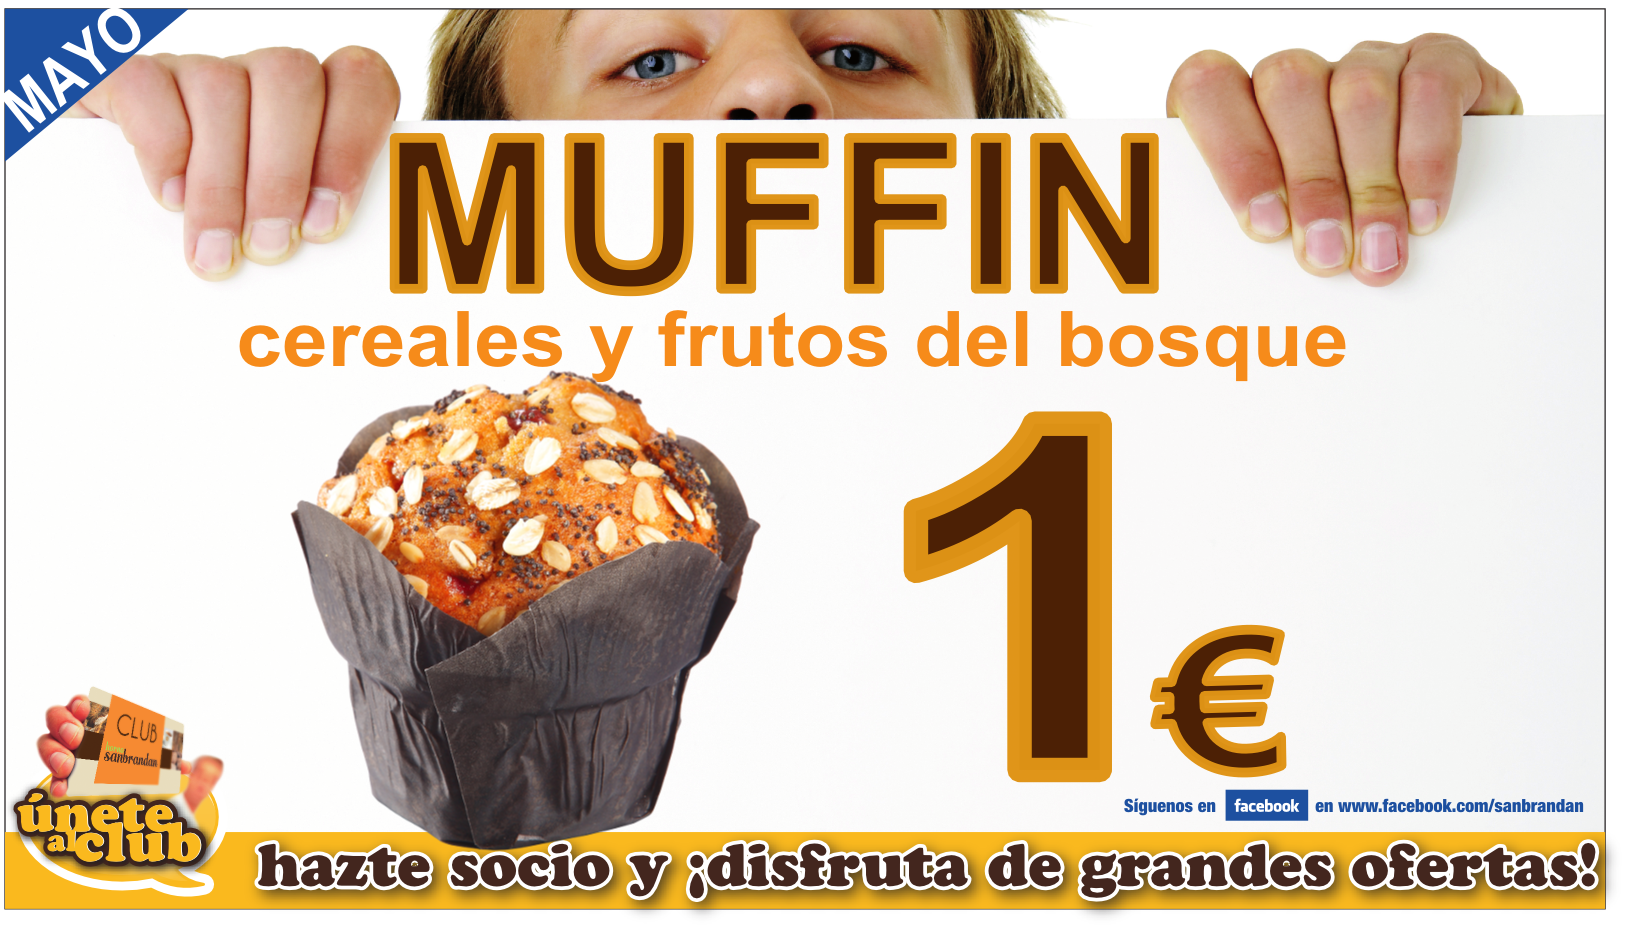 Muffin de cereales y frutos del bosque  por 1 €